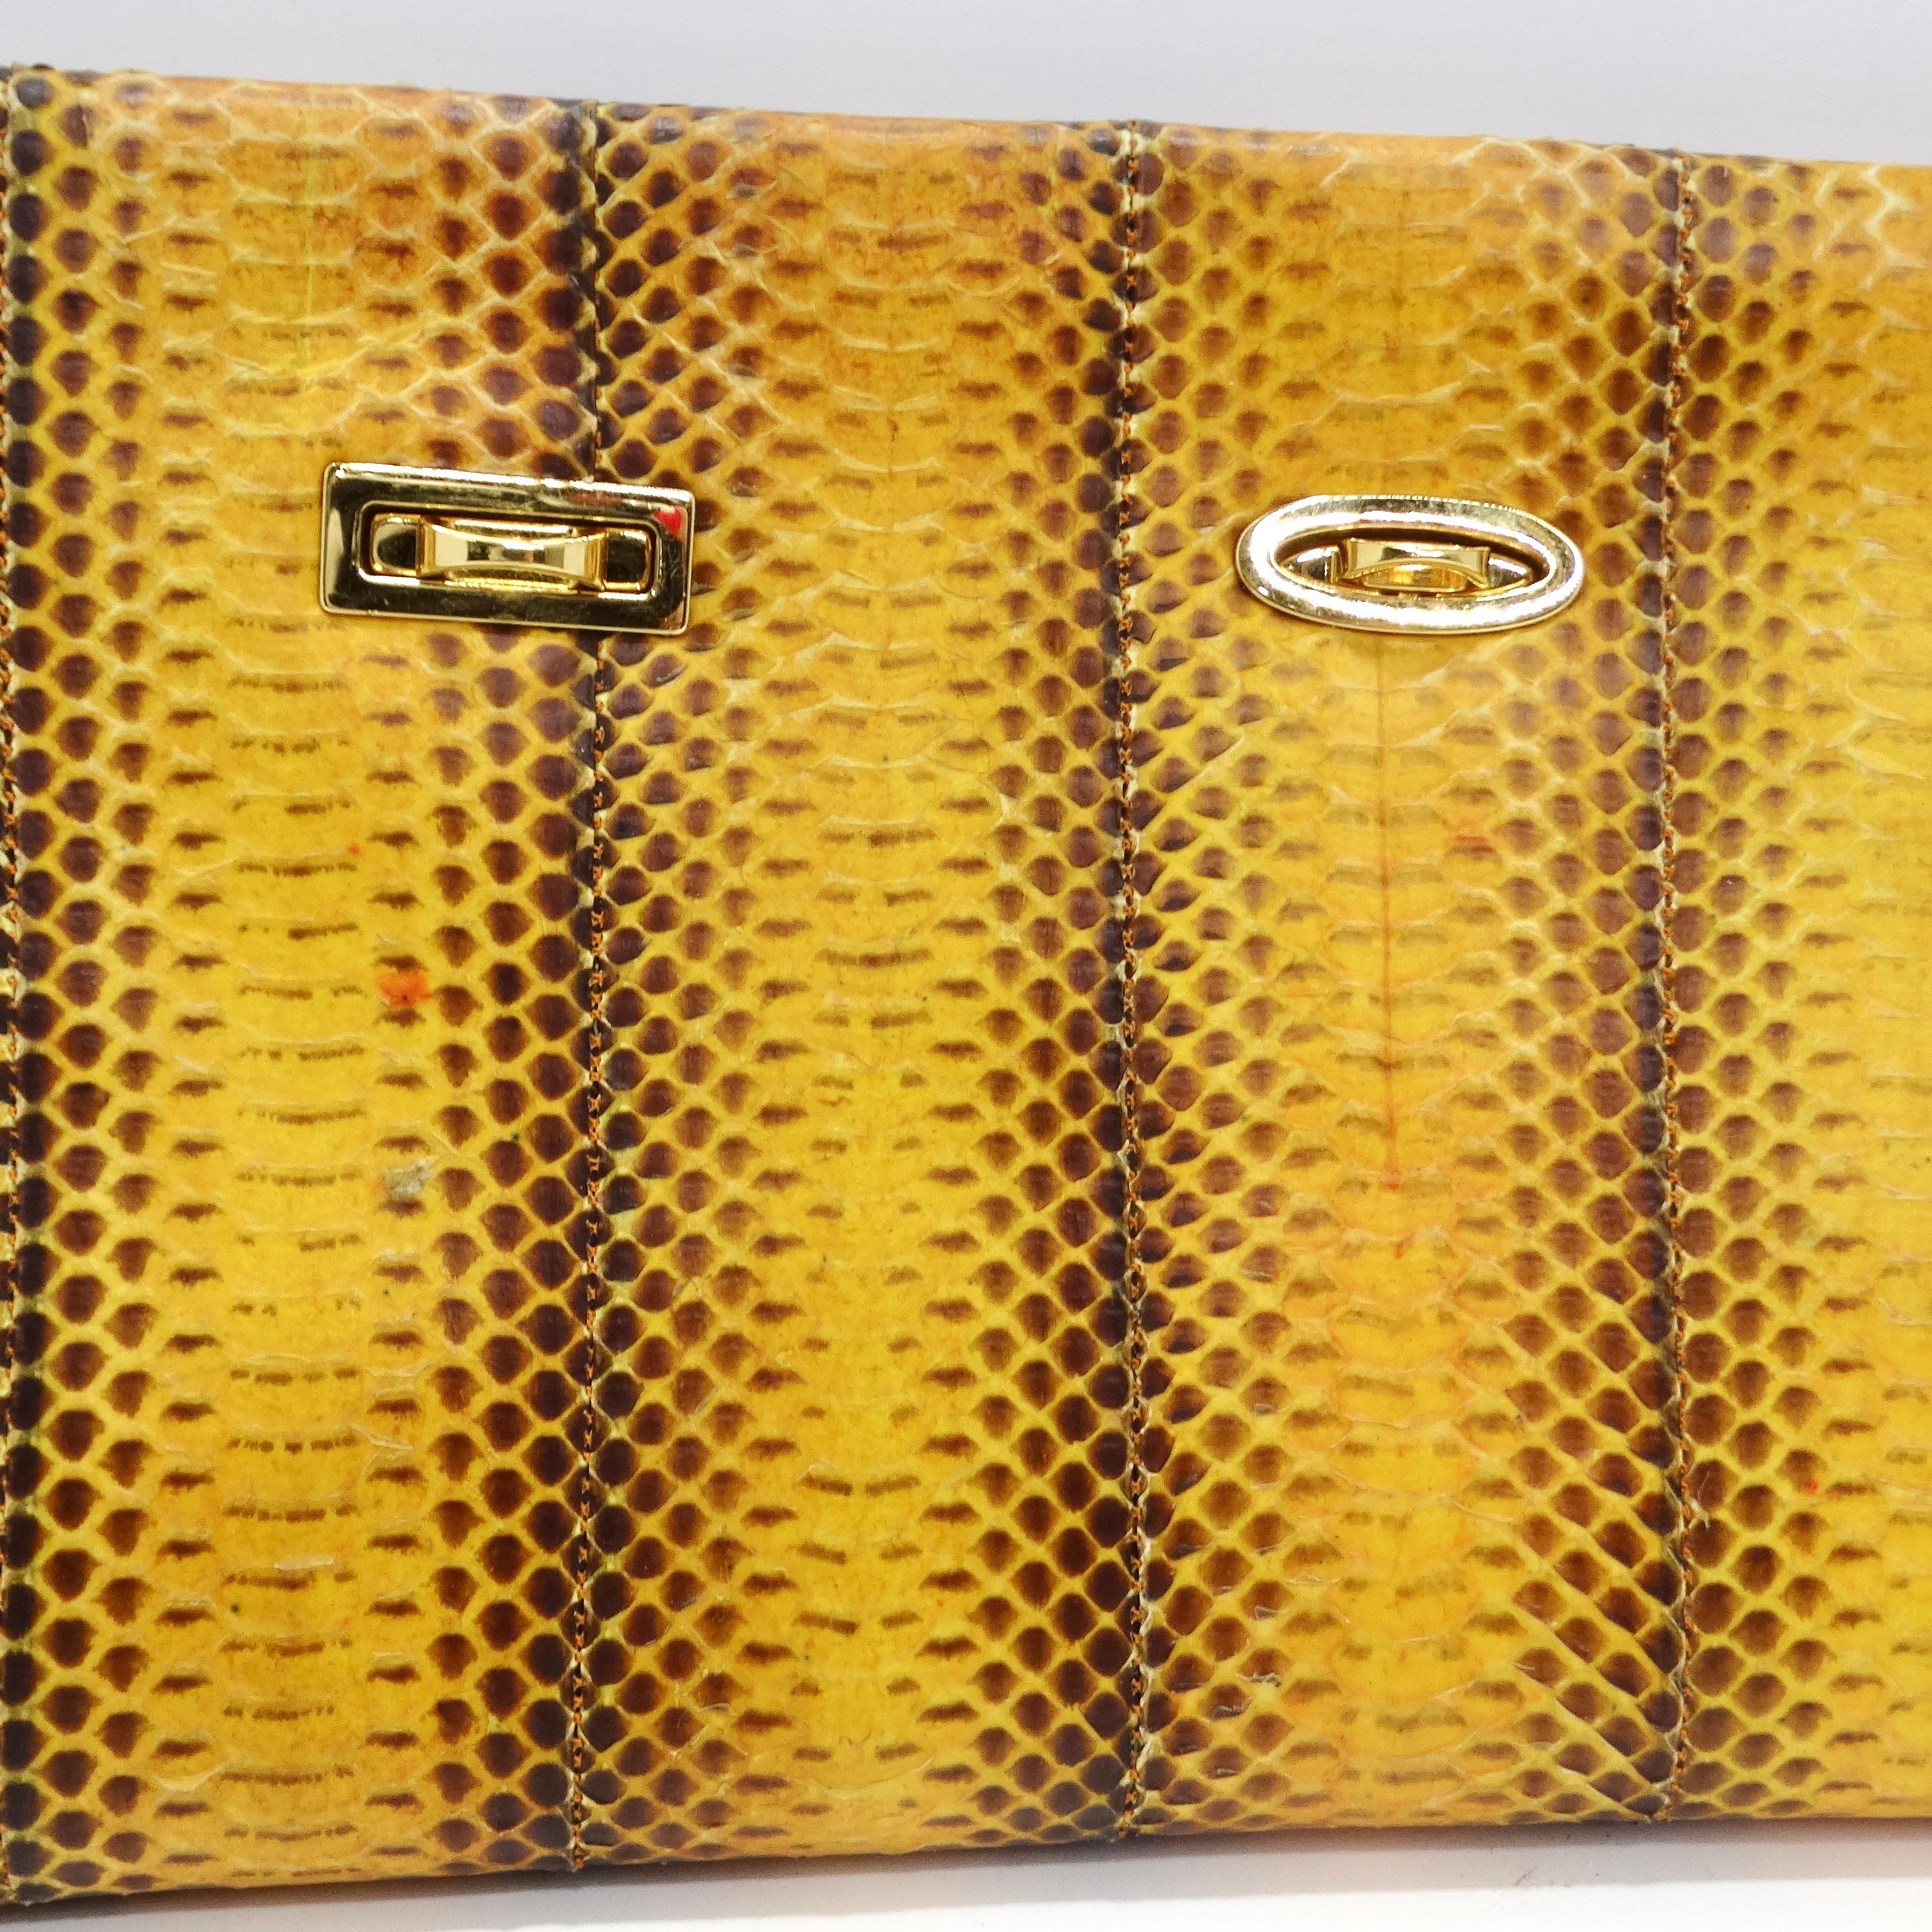 Wir präsentieren die atemberaubende VBH 1980s Yellow Snakeskin Embossed Leather Clutch, ein wirklich besonderes und auffälliges Accessoire, das den kühnen und lebendigen Stil der 1980er Jahre verkörpert. Diese handgefertigte und in limitierter